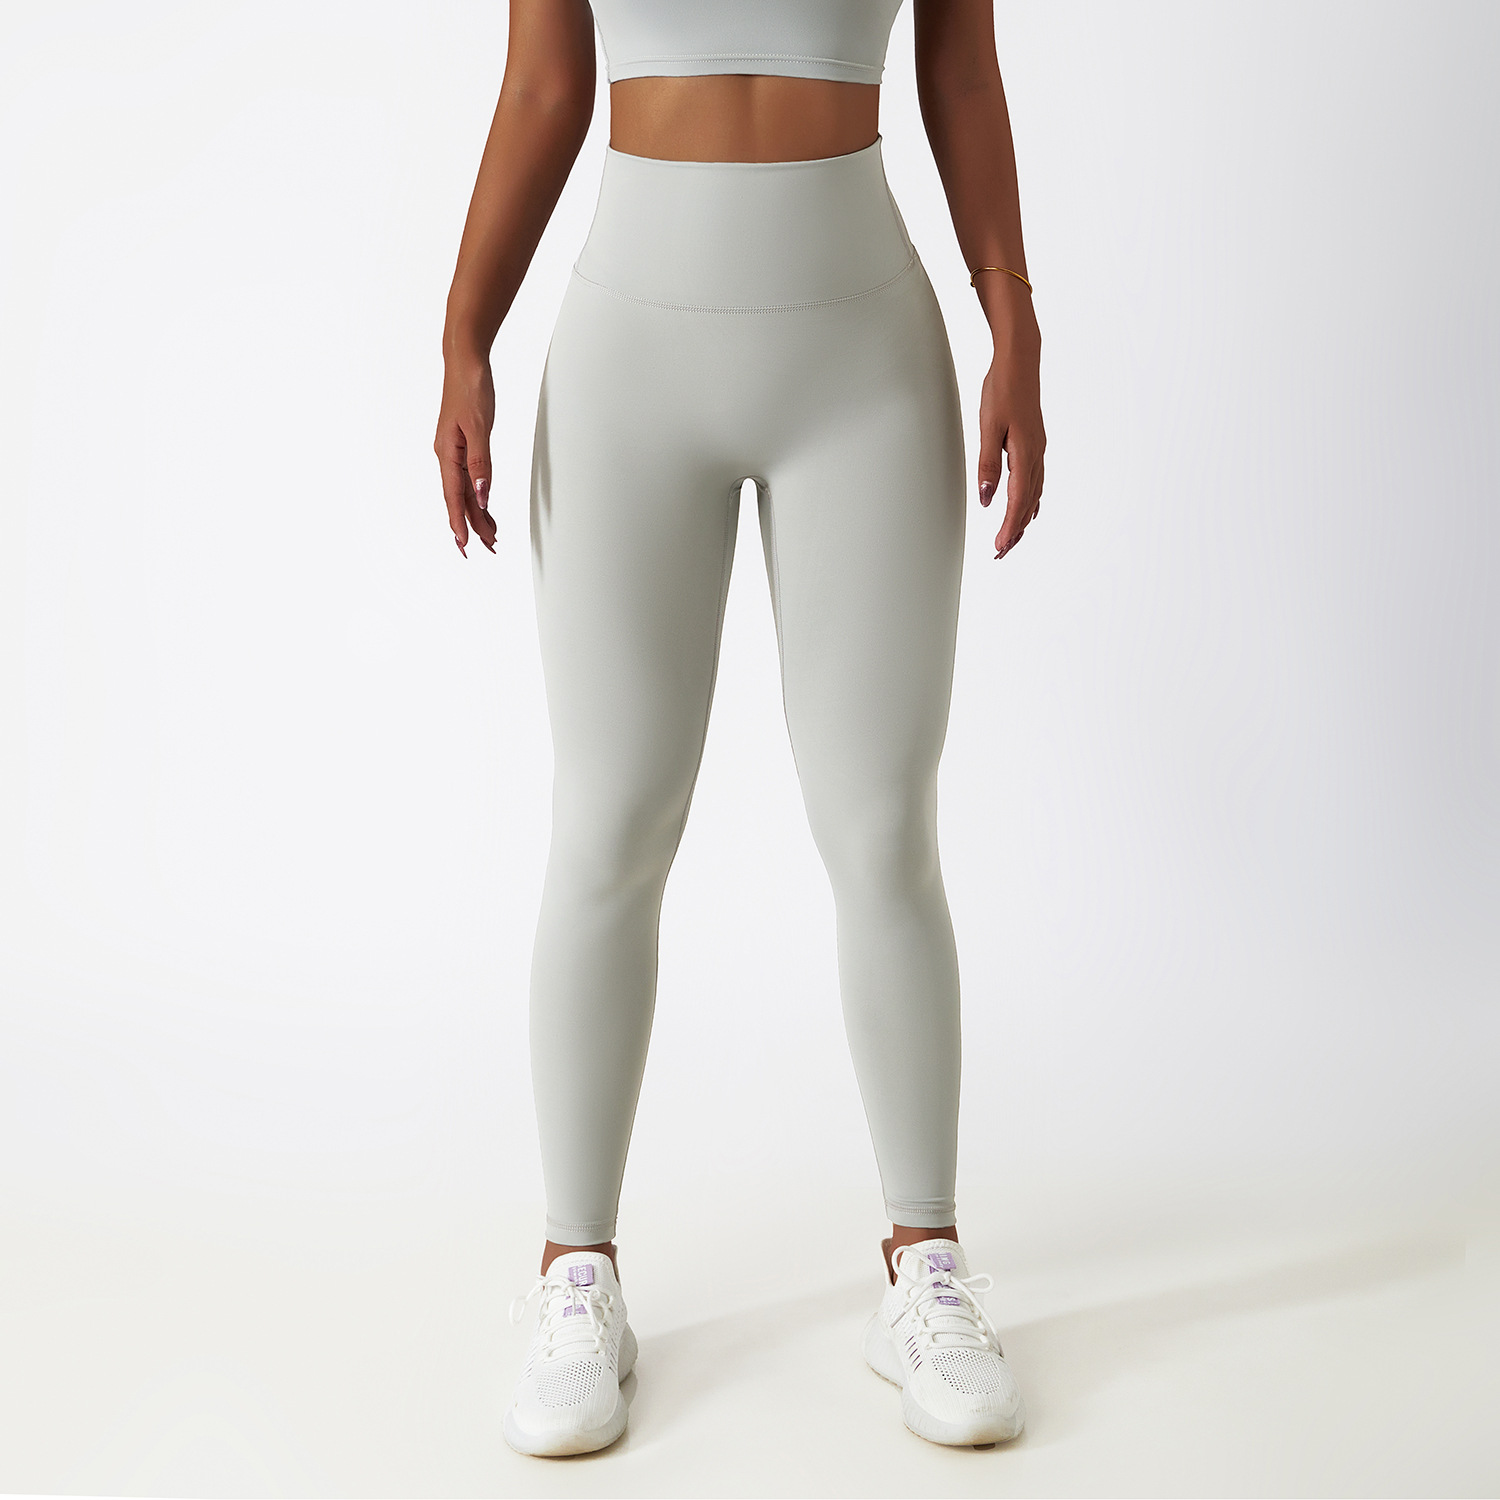 CK5858 recycled nylon legging for gym winter running leggings